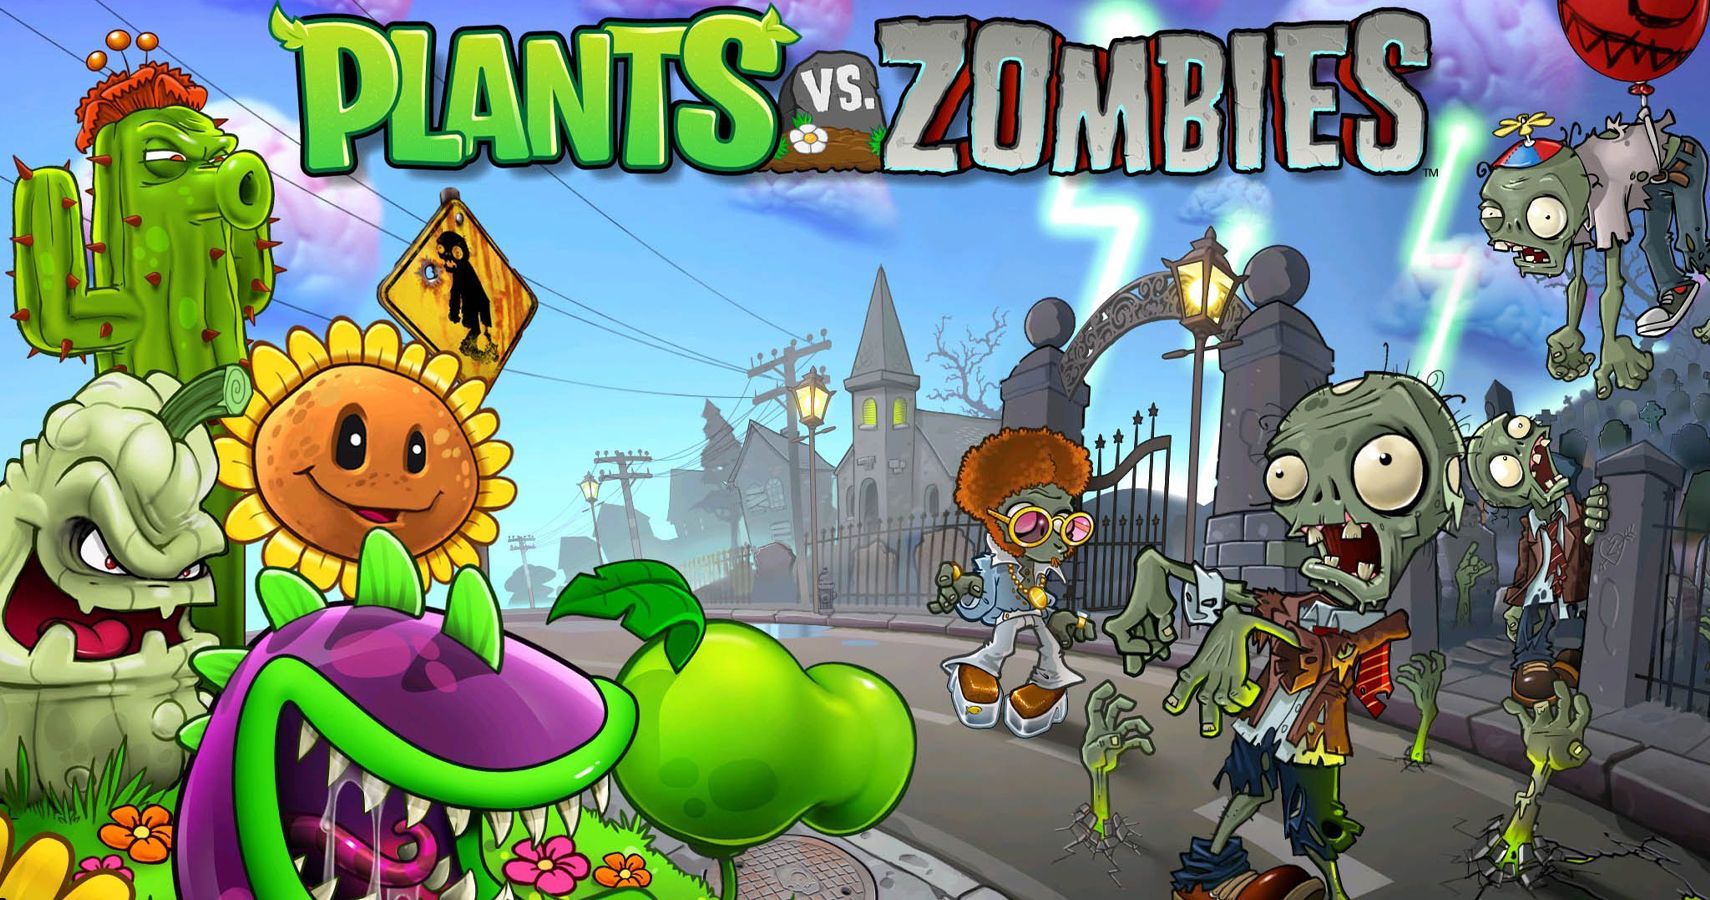 Plants Vs Zombies Original Concept Art Revealed